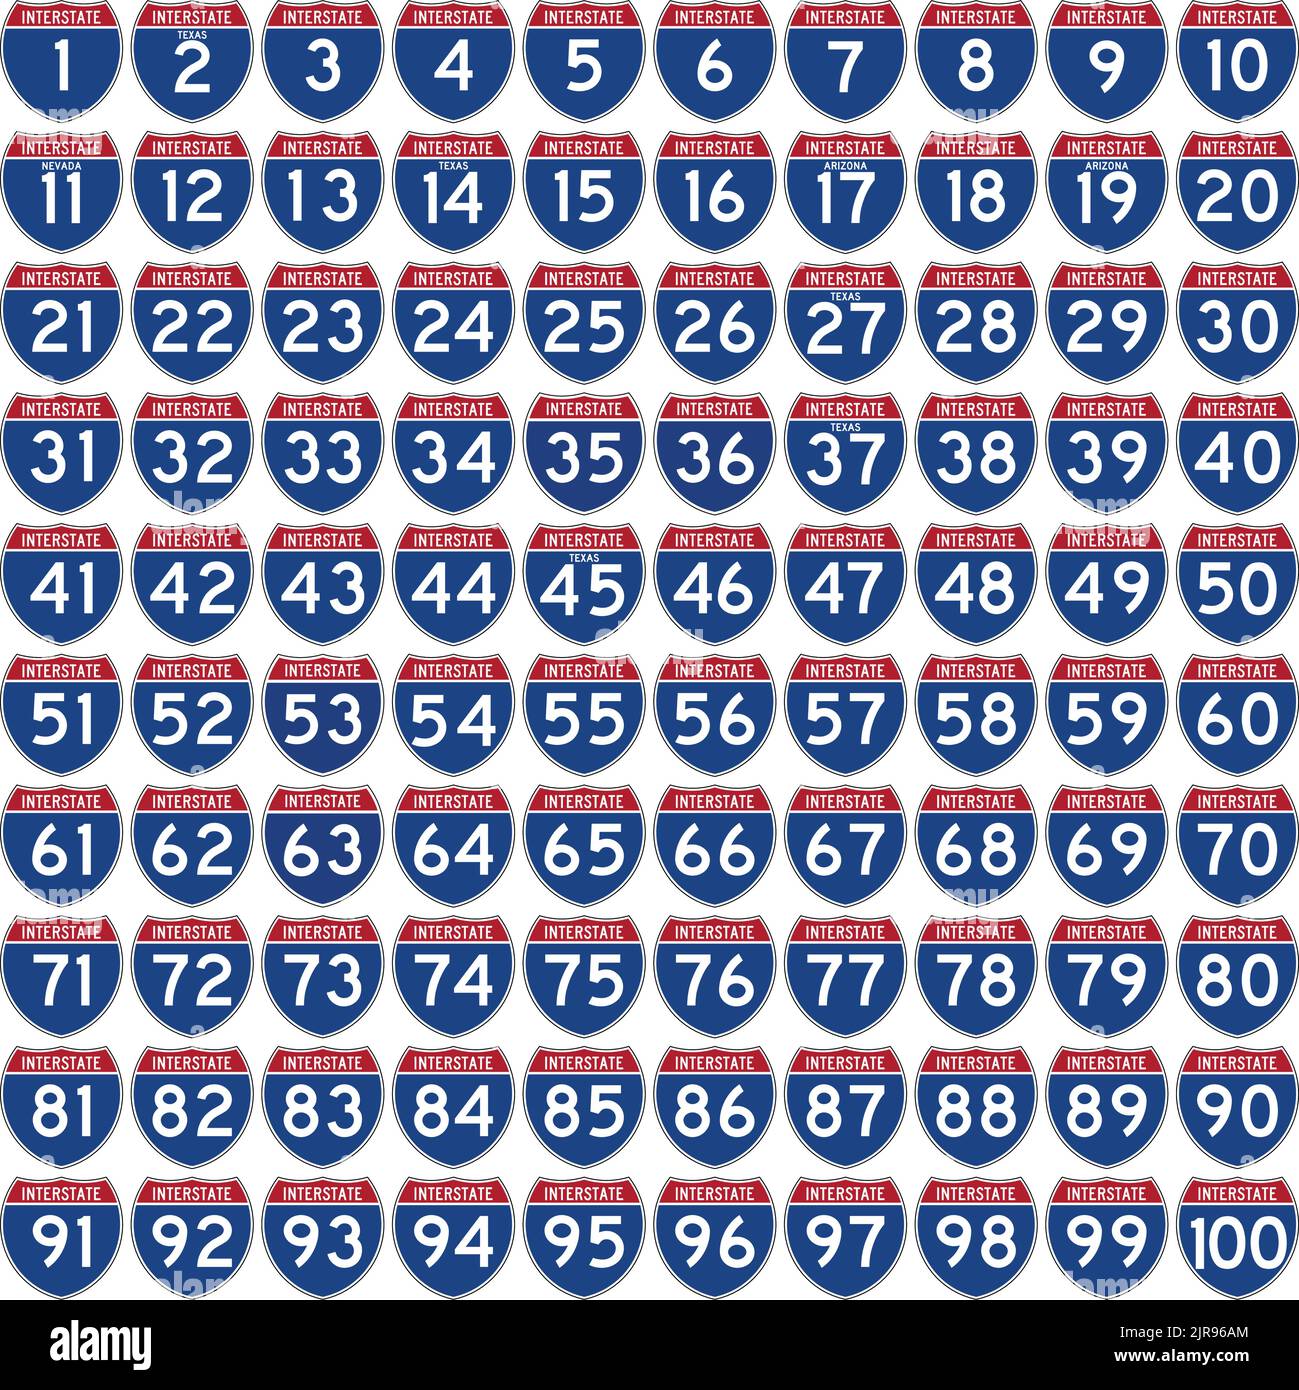 Stati Uniti contigui, ci sono 100 autostrade interstatali principali elencate nella tabella seguente. Illustrazione Vettoriale